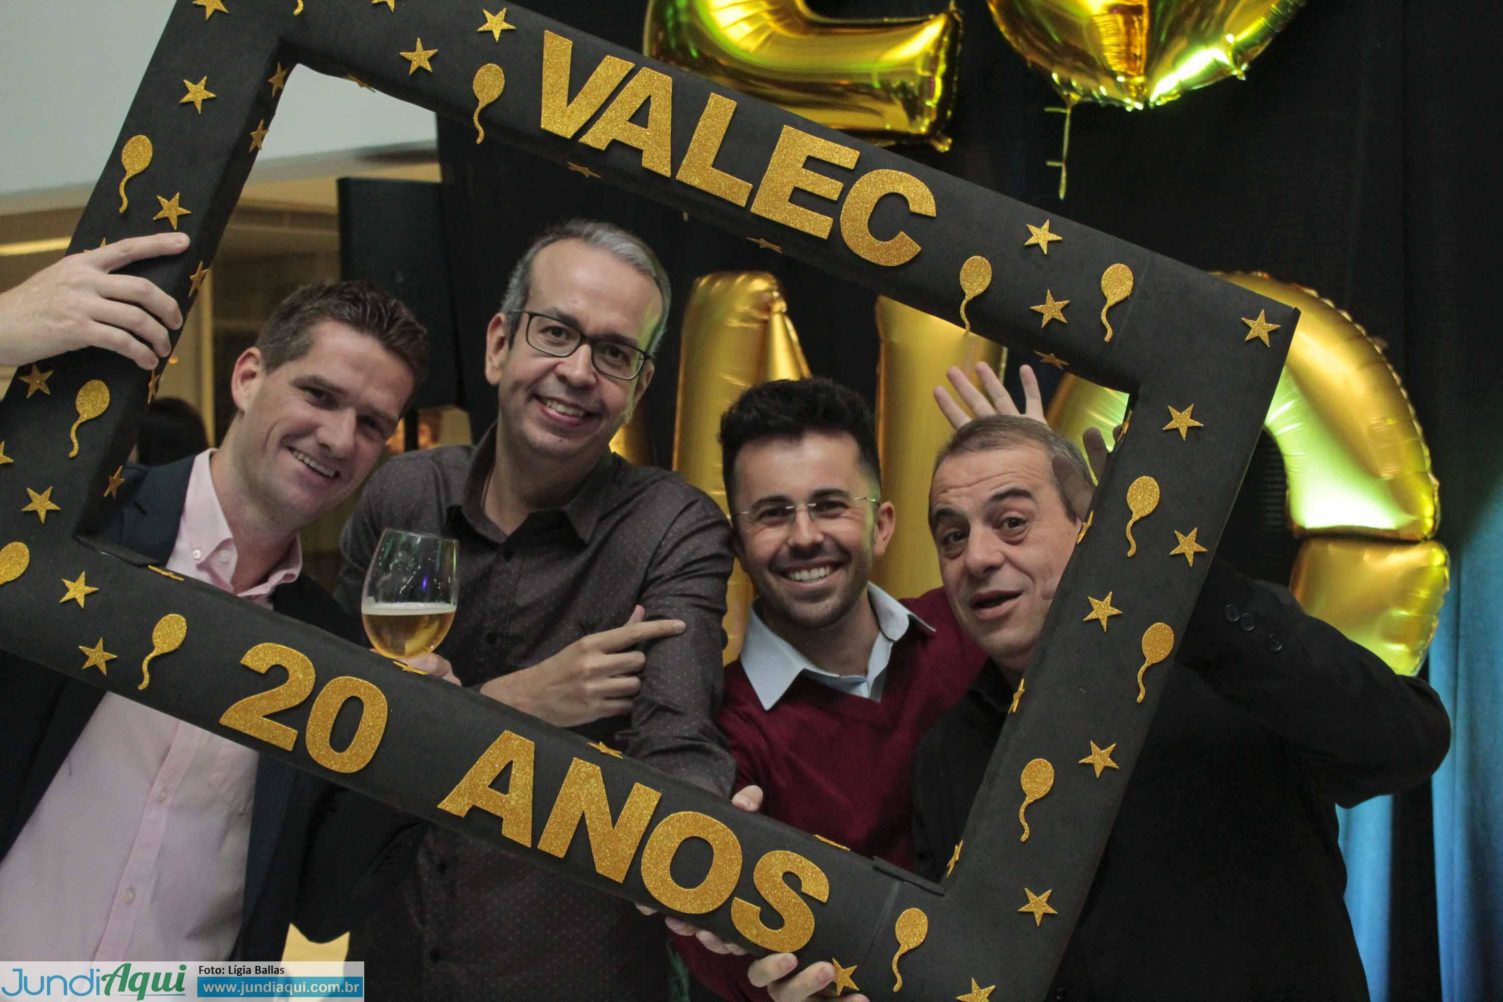  Valec se consolida aos vinte anos entre líderes da Renault